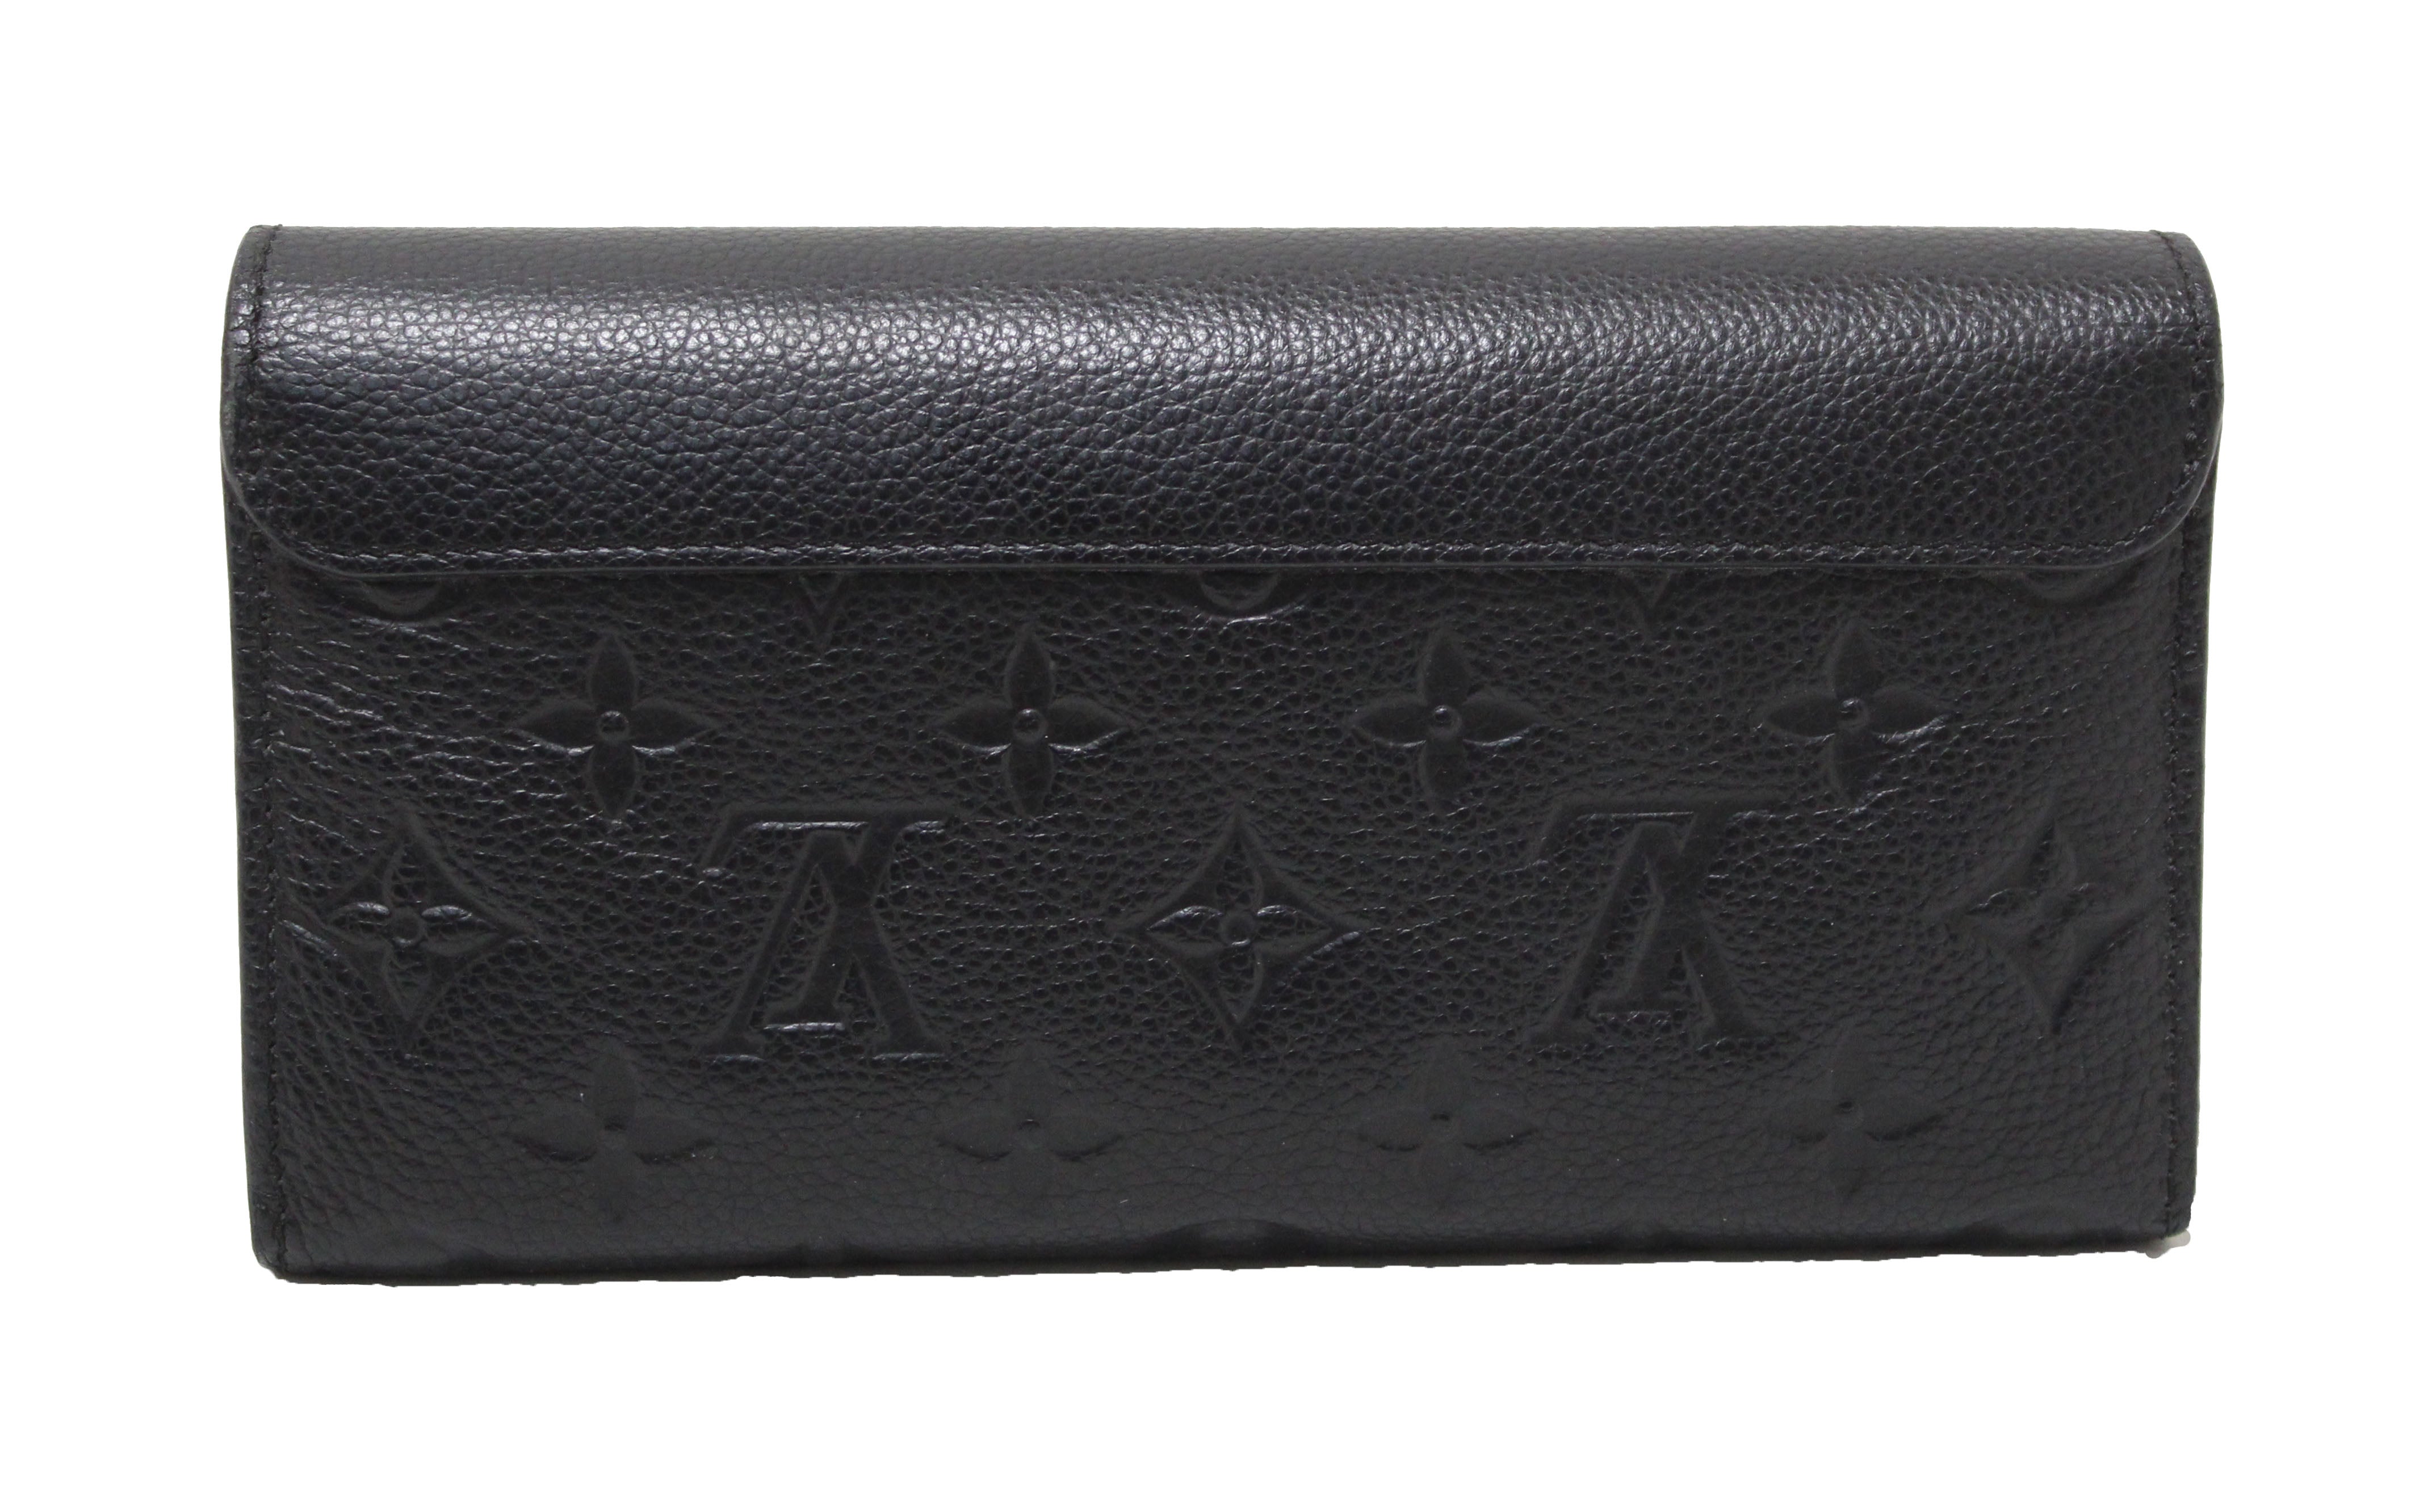 Louis Vuitton Pont-Neuf Wallet in monogram Empreinte Leather in